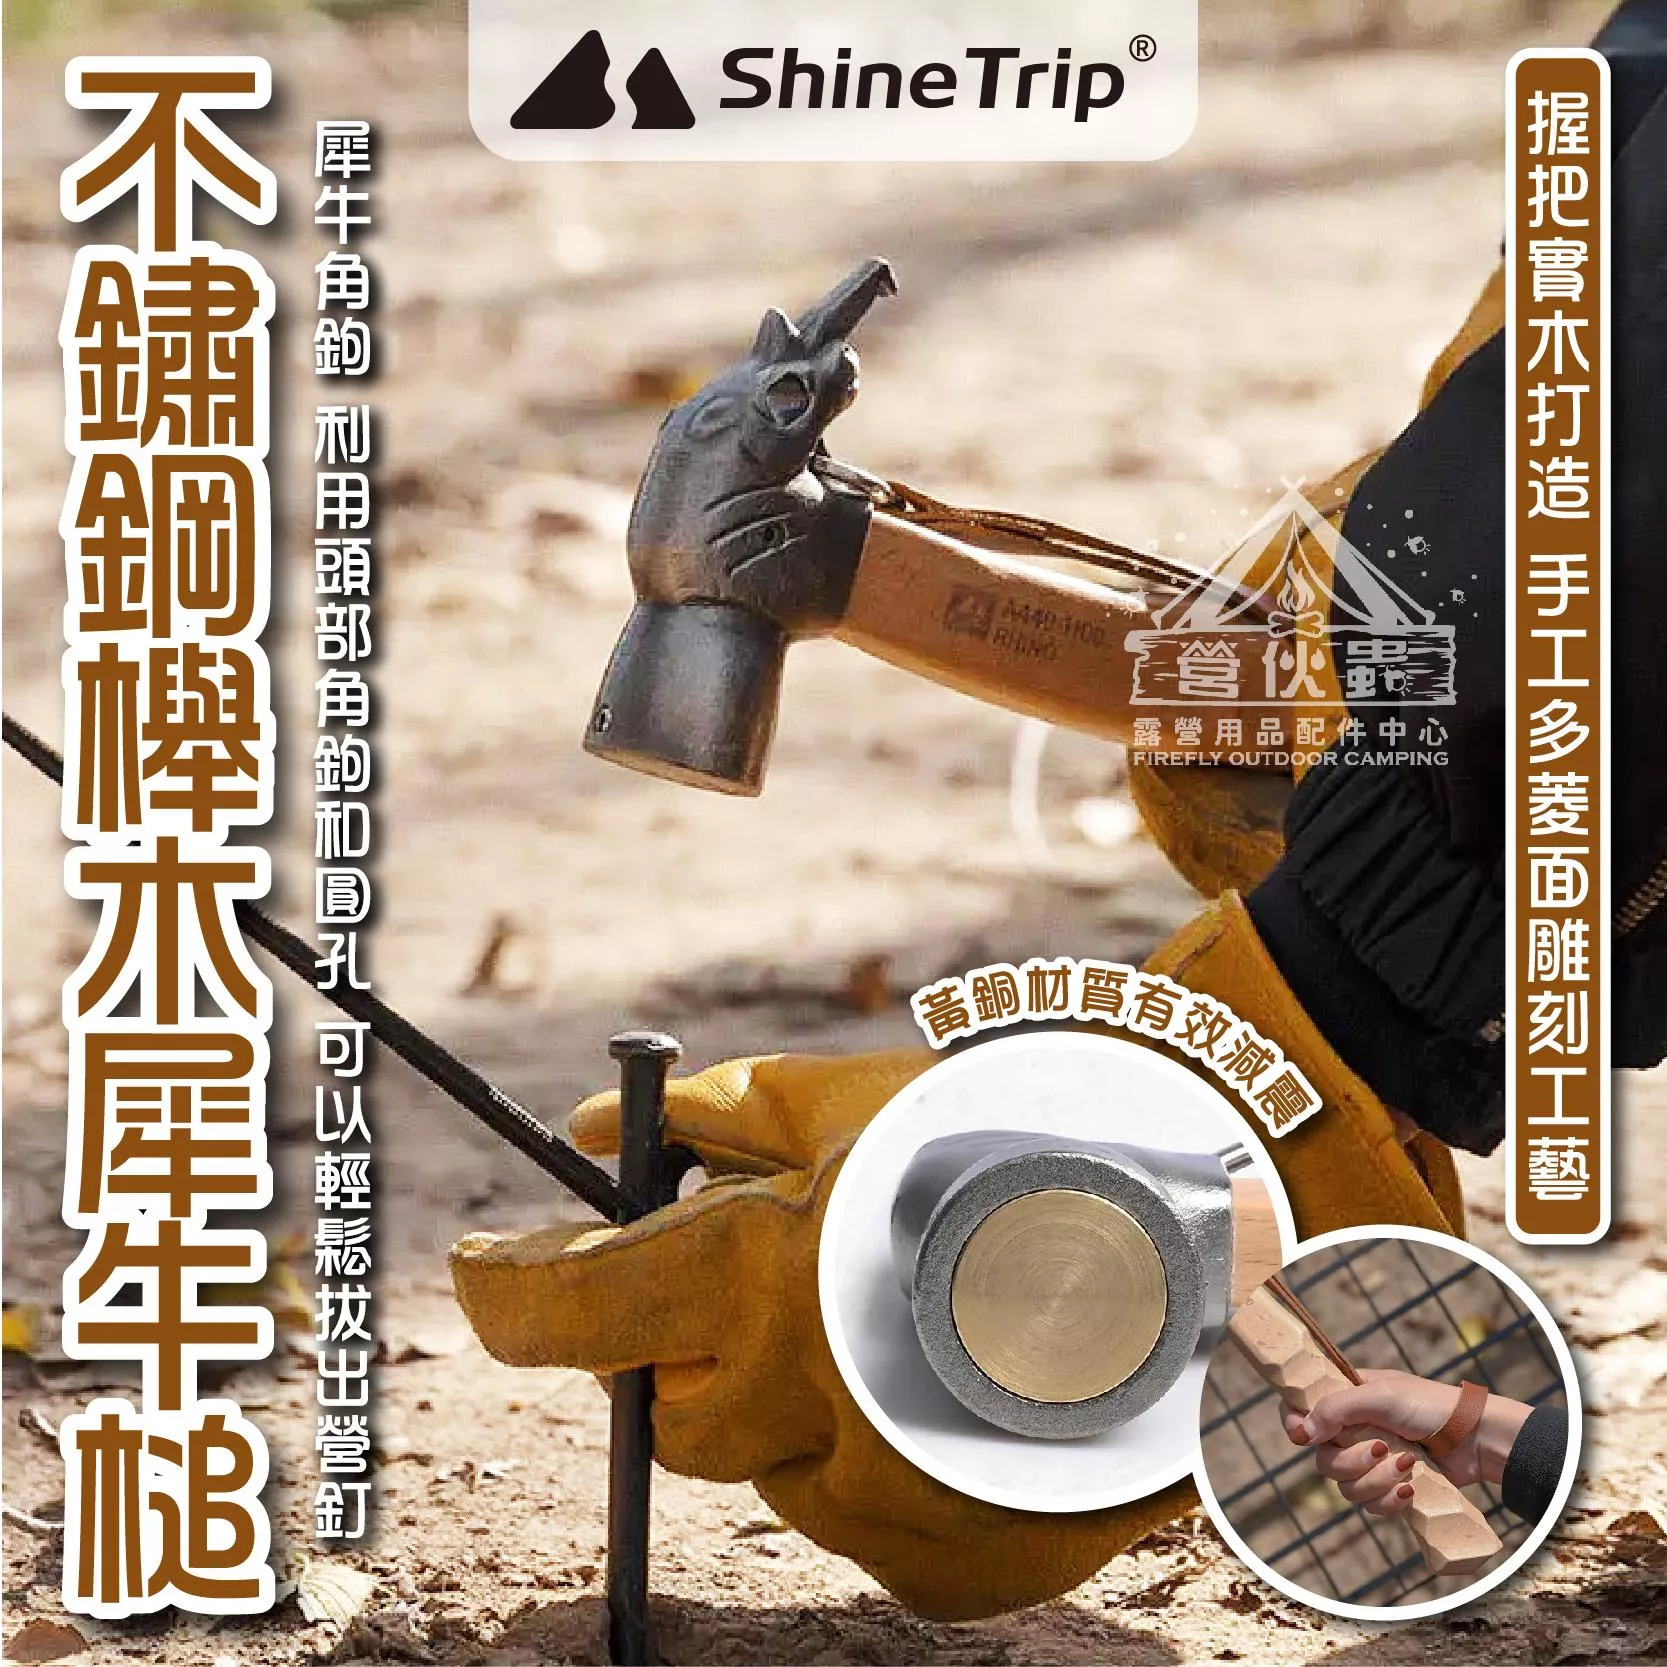 【營伙蟲1454】ShineTrip櫸木不鏽鋼犀牛營槌 山趣 犀牛營槌 野營槌 營釘 銅錘 拔釘器 鐵鎚 營釘 錘子 營槌 造型槌